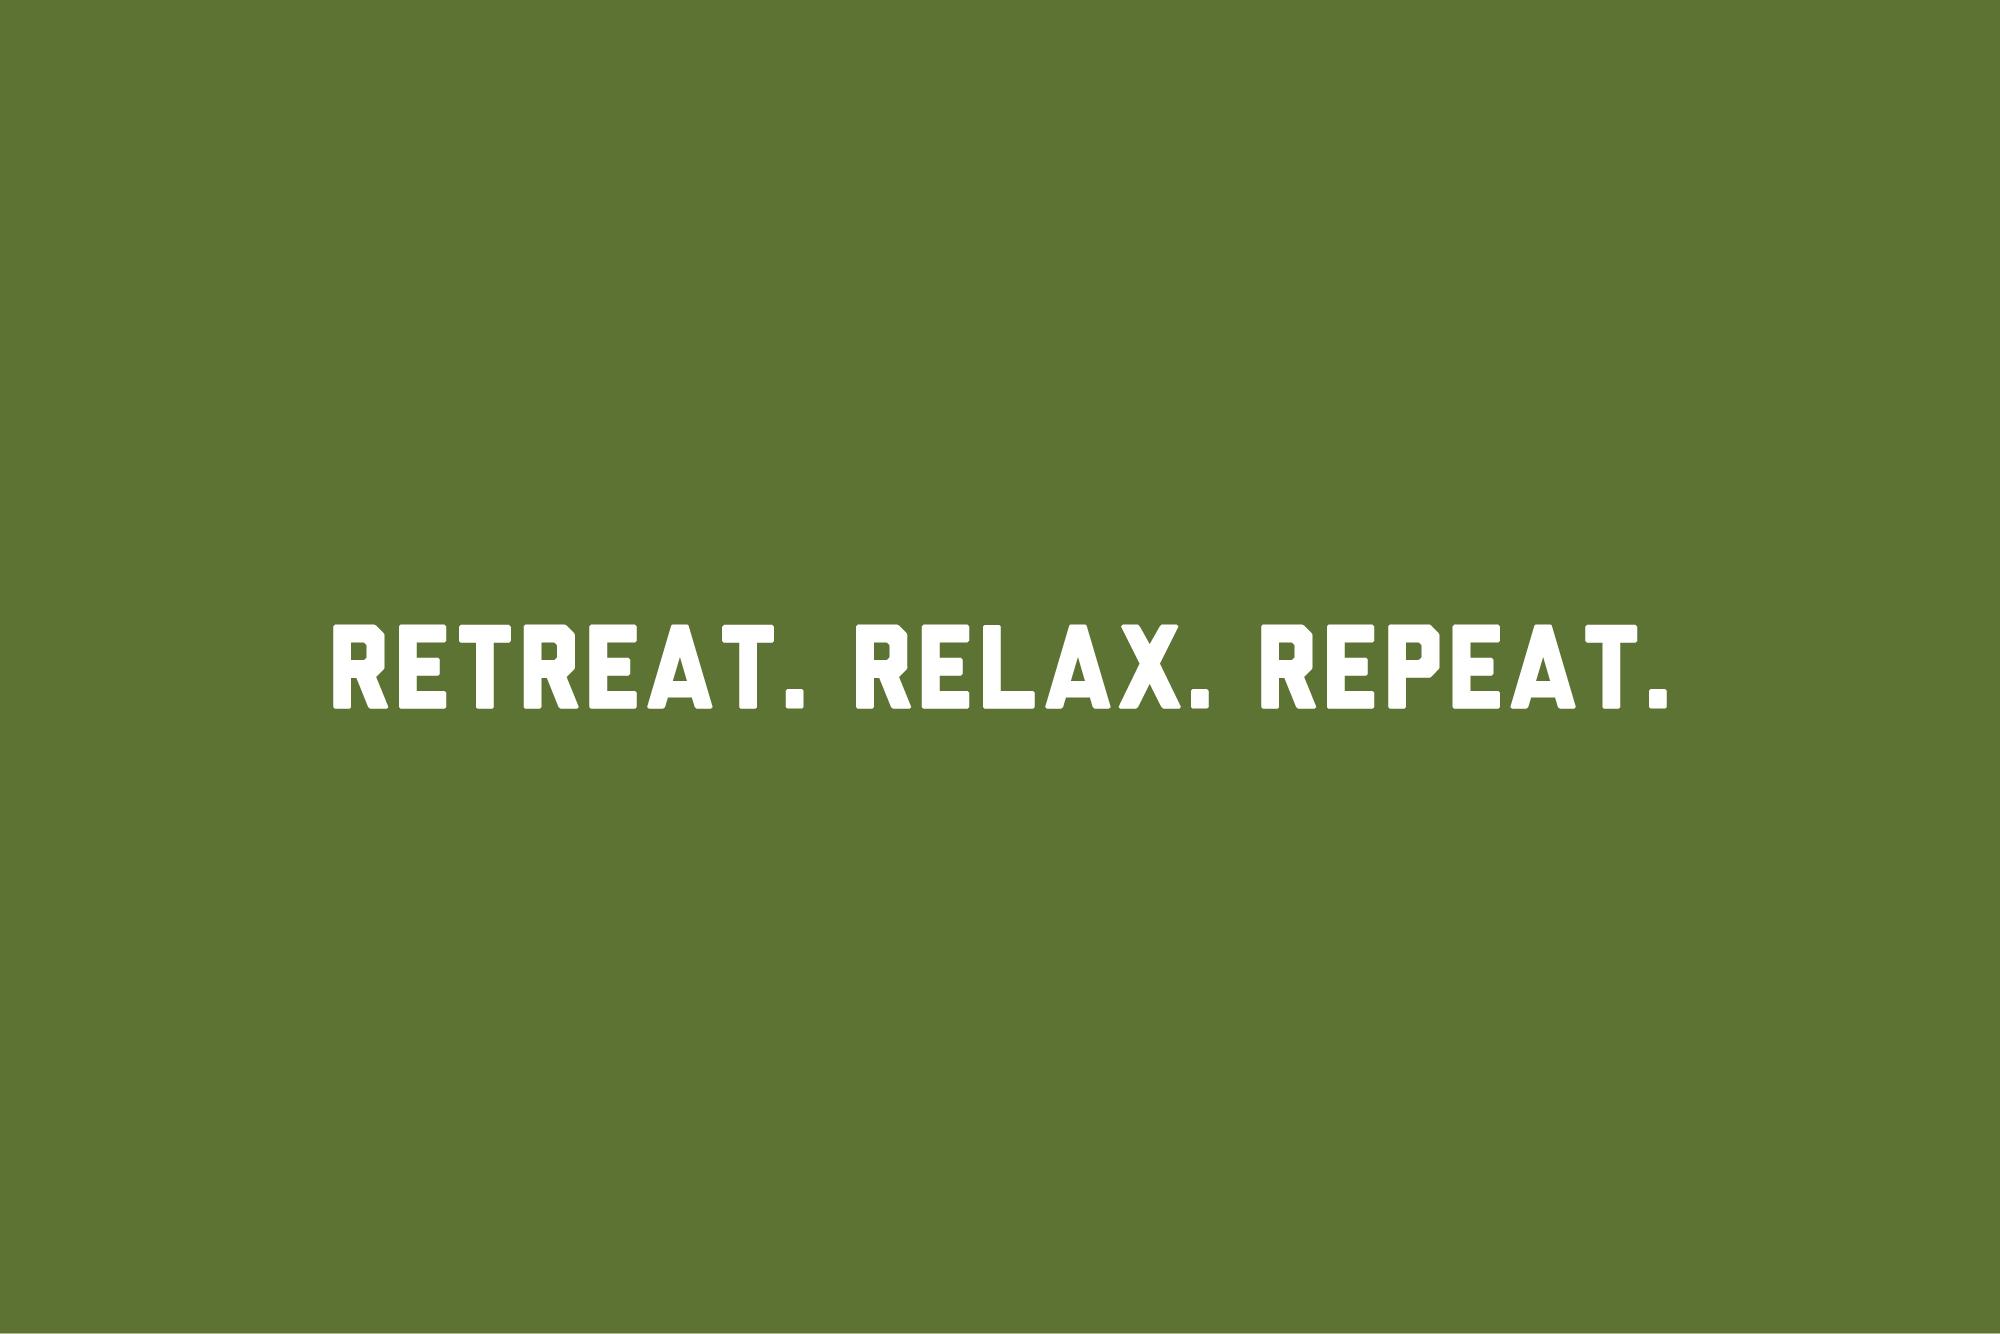 KM Resorts tagline: Retreat. Relax. Repeat.